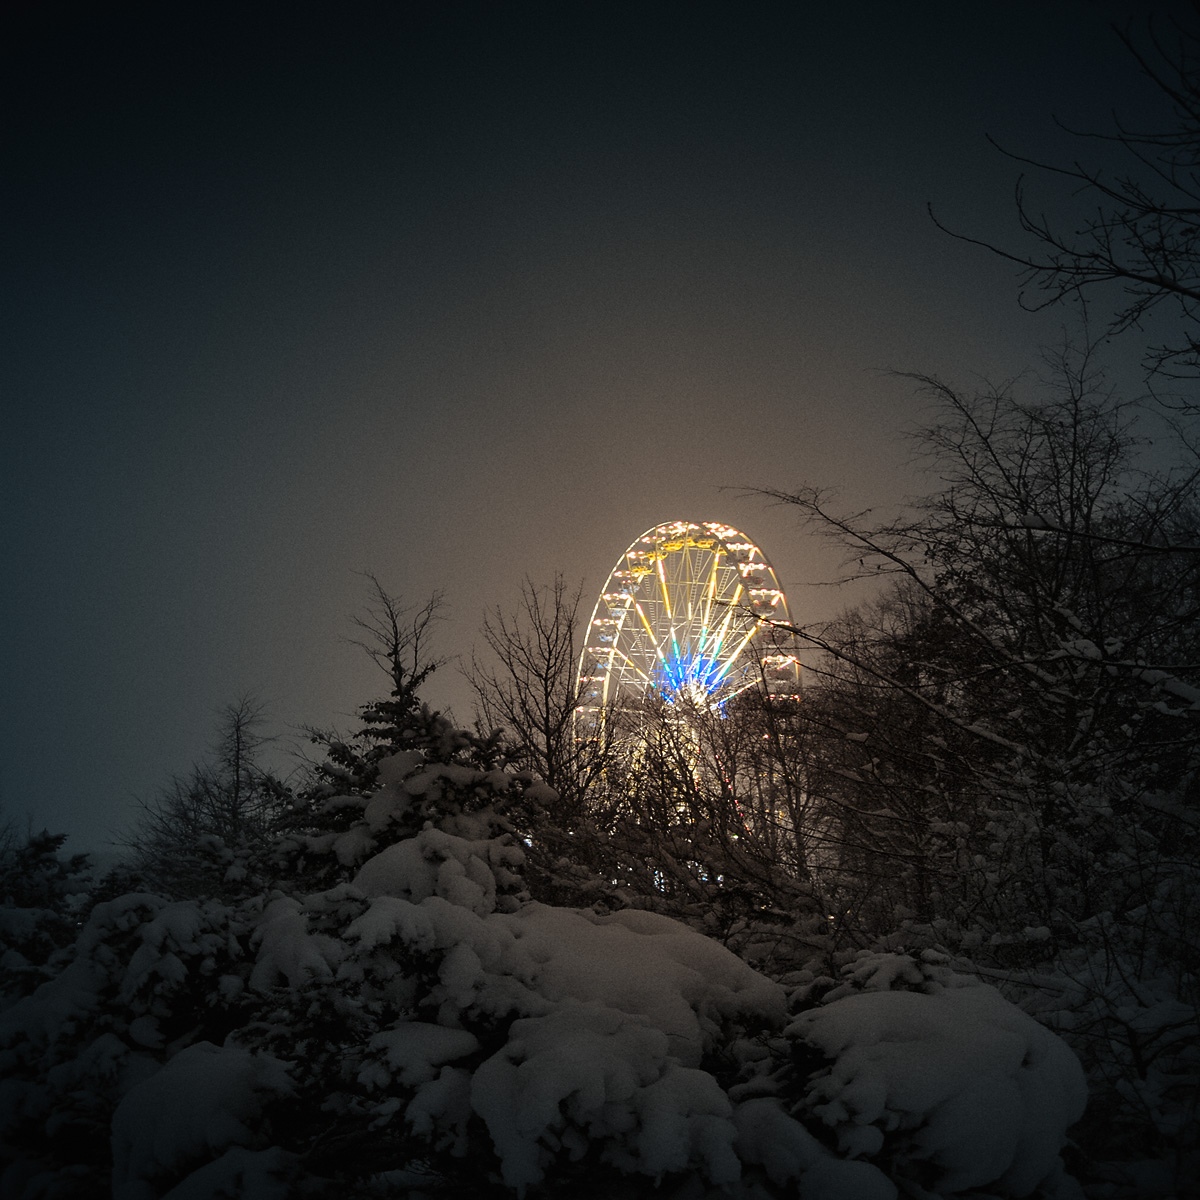 wonderland_ferris_wheel_in_snow_in_berlin-stephen-austin-welch-director-photographer